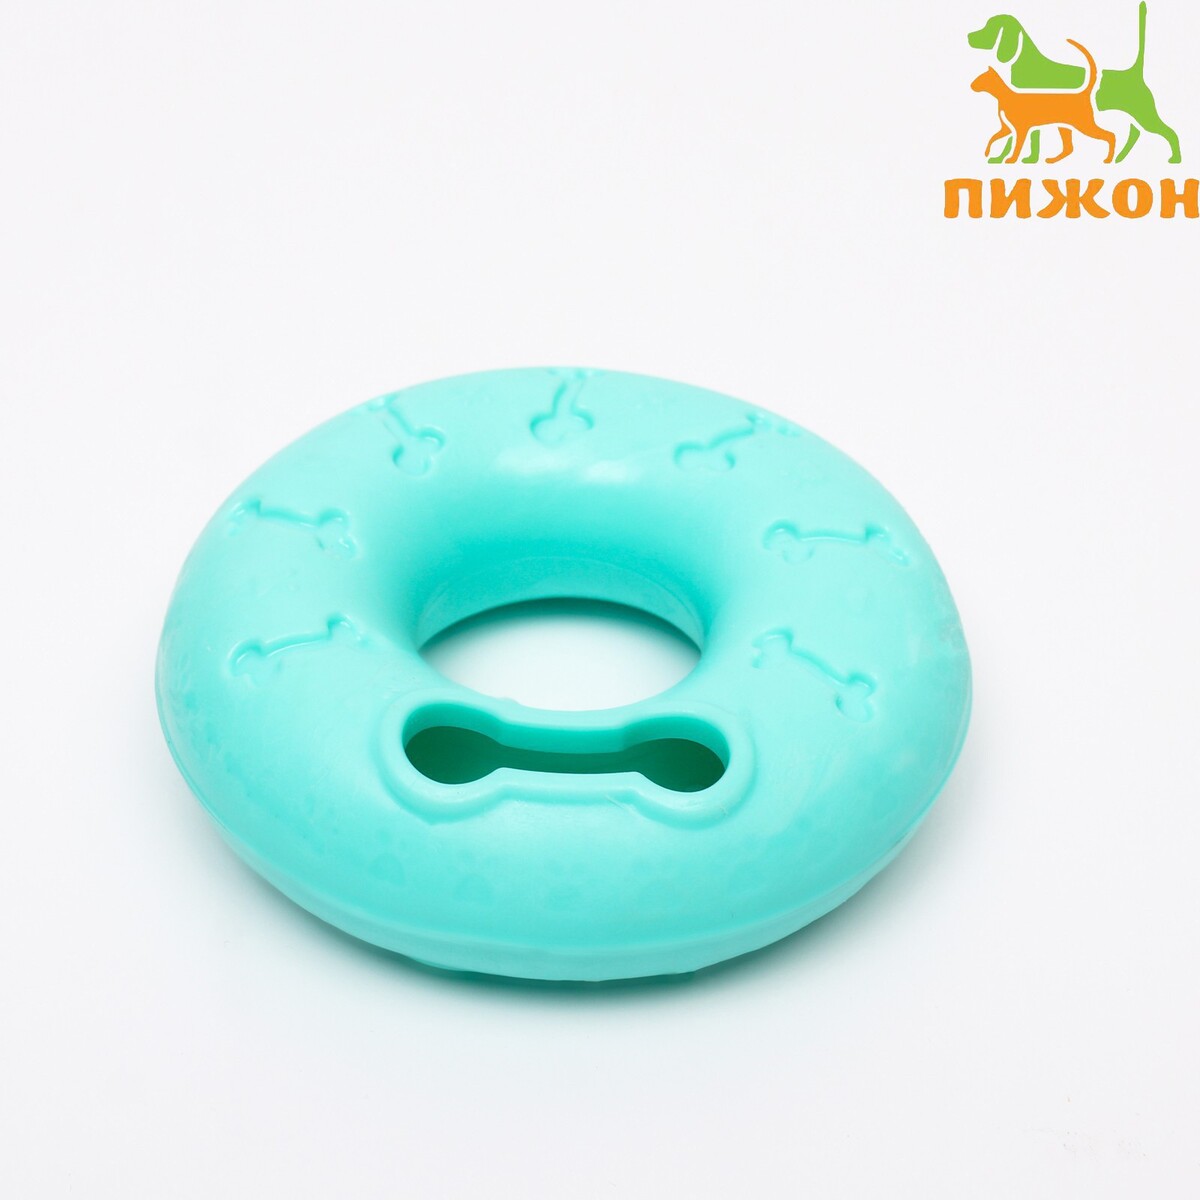 Кольцо под лакомства, утолщенный tpr, 12,5 см, зеленое игрушка кольцо плавающее среднее зооник пластикат 17 см салатовое